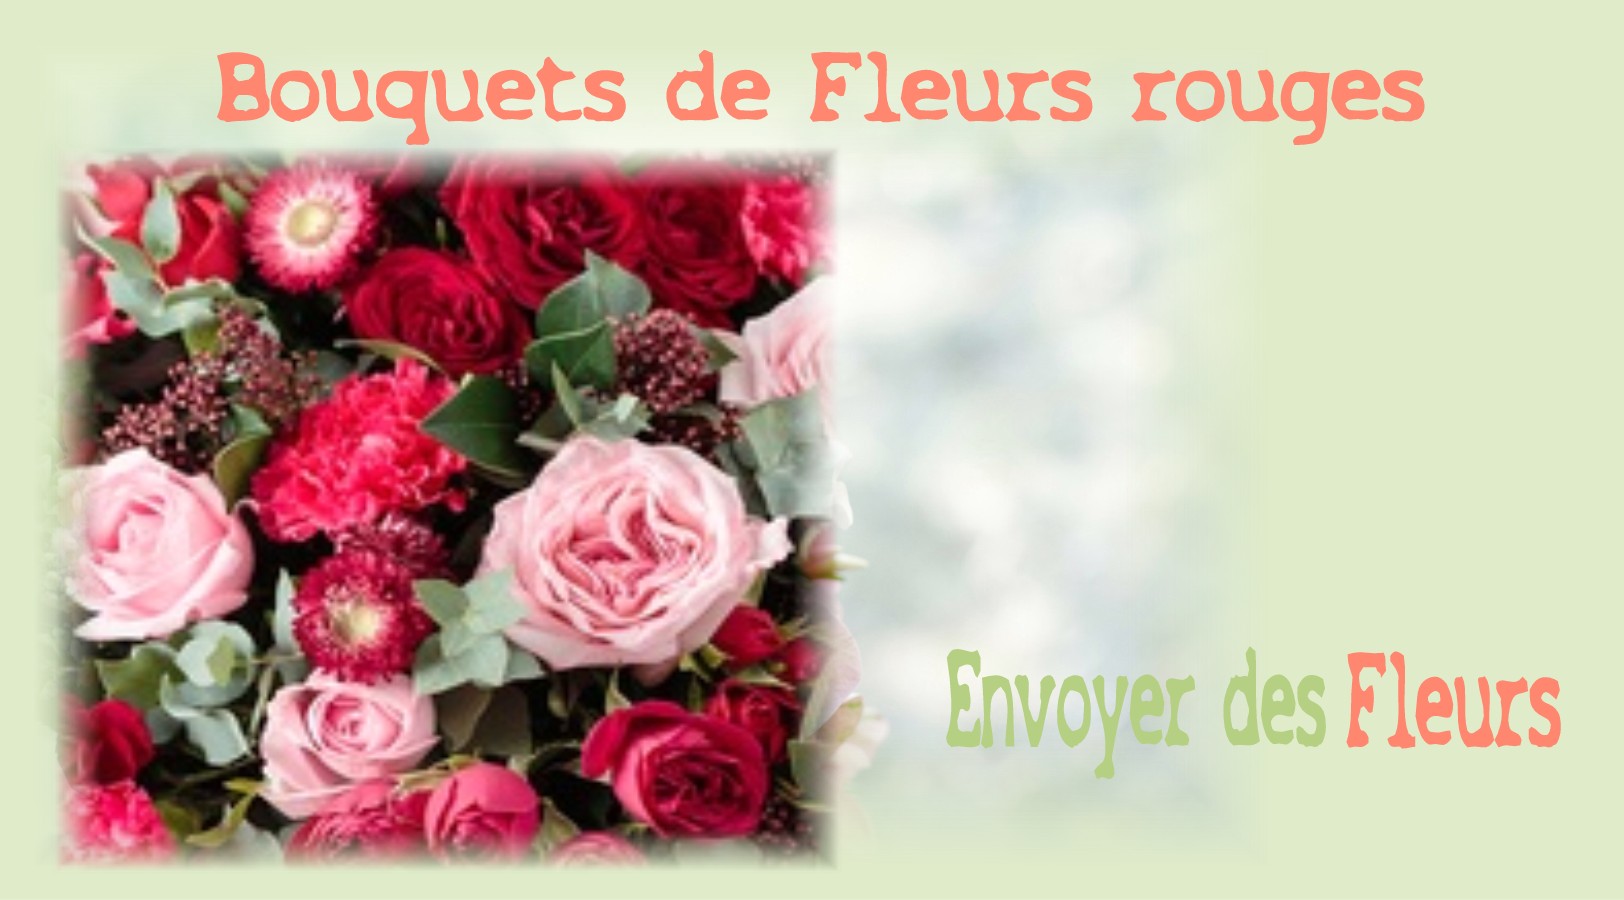 BOUQUETS DE FLEURS ROUGES - FLEURISTE STRASBOURG (67) - ENVOYER DES FLEURS